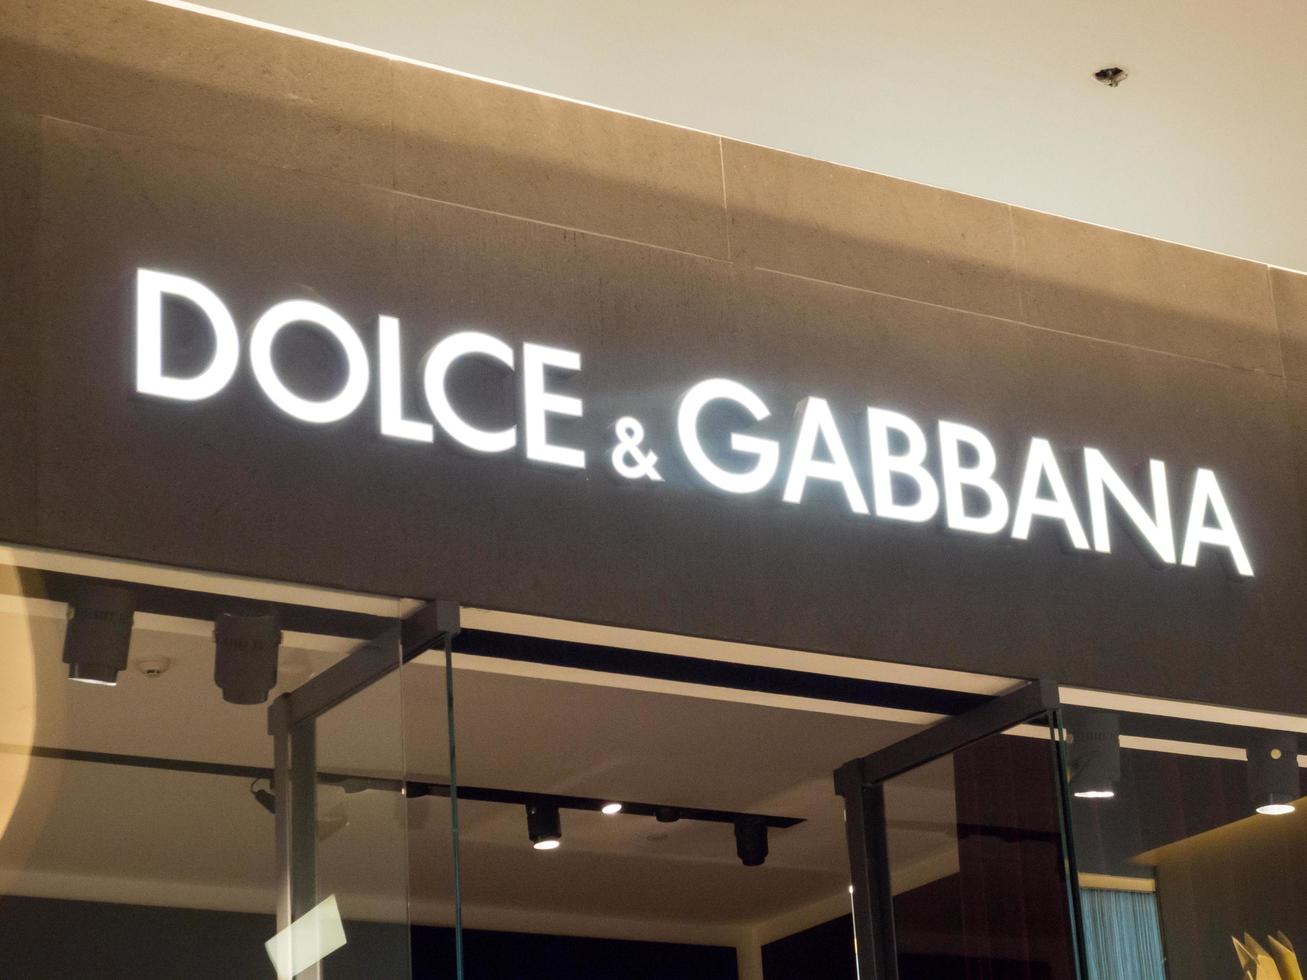 dolce gabbana-winkels in siam paragon bangkok thailand23 november 2018de winkel bevindt zich in het siam paragon-winkelcentrum. op bangkok thailand23 november 2018 foto